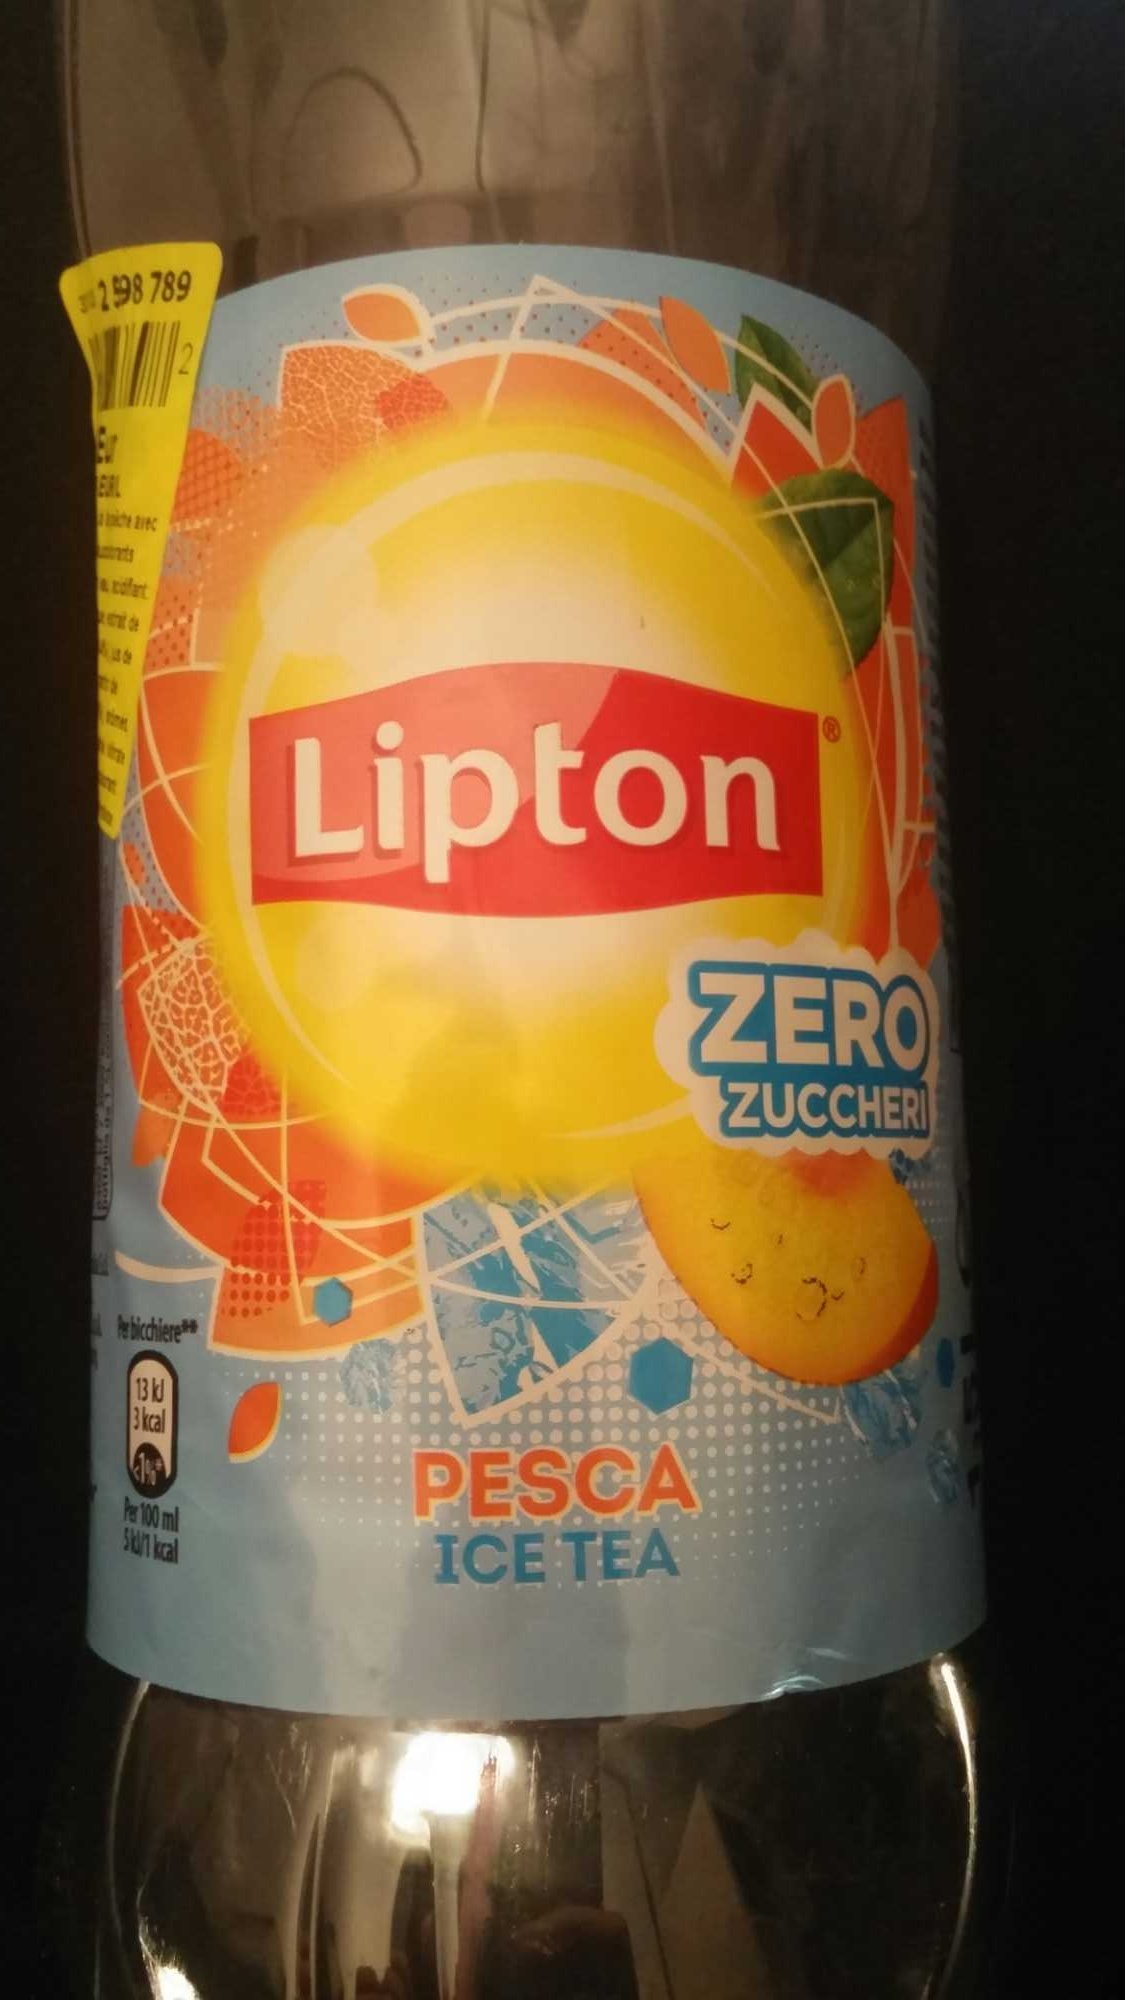 Lipton zero pesca - Product - fr